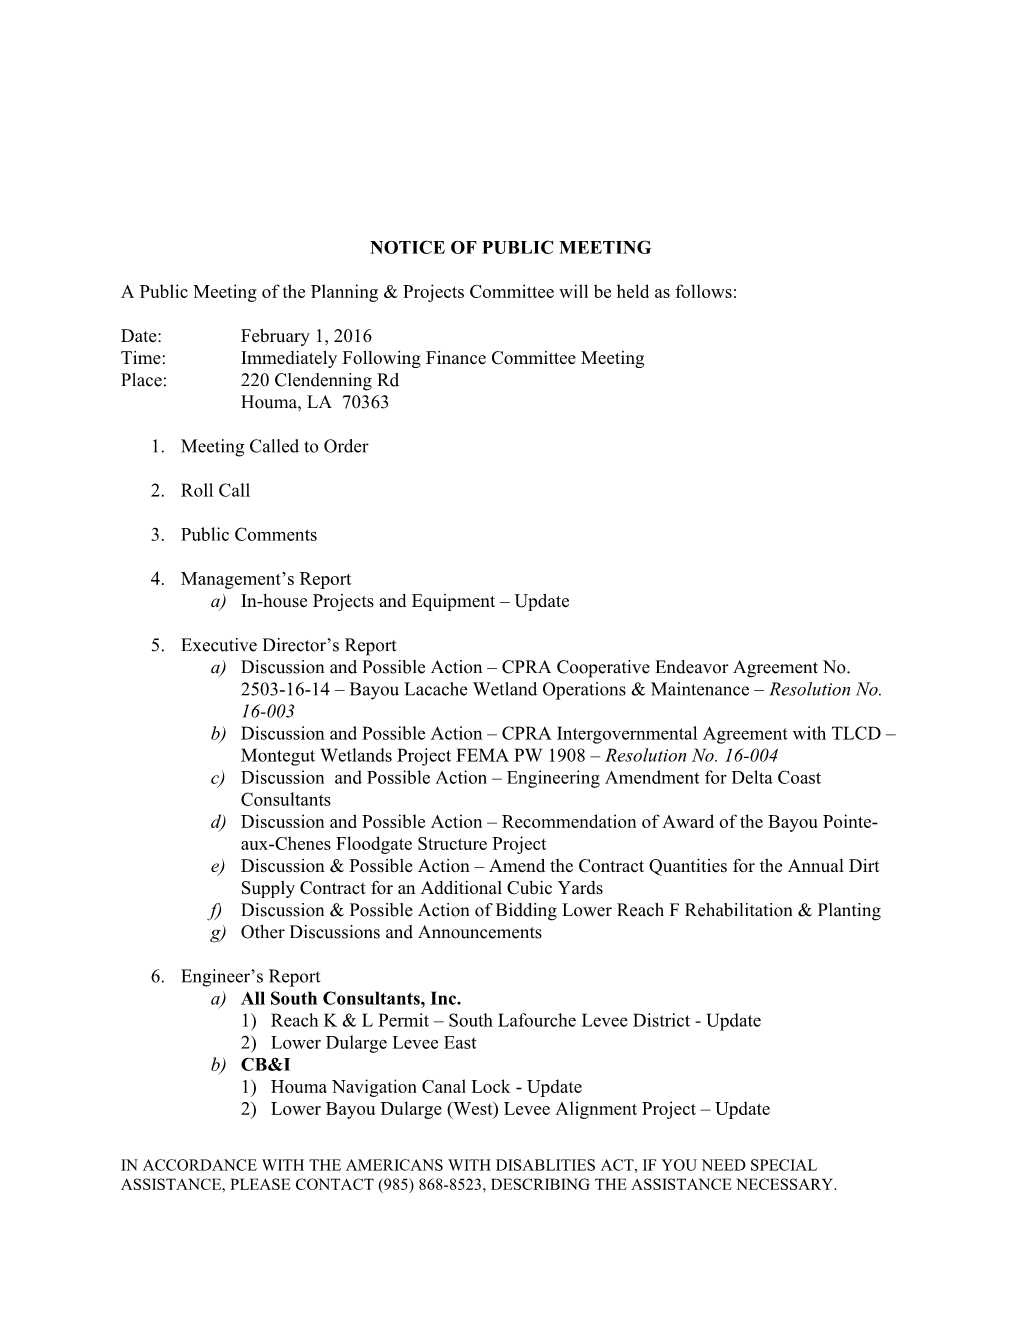 Meeting Notice/Agenda